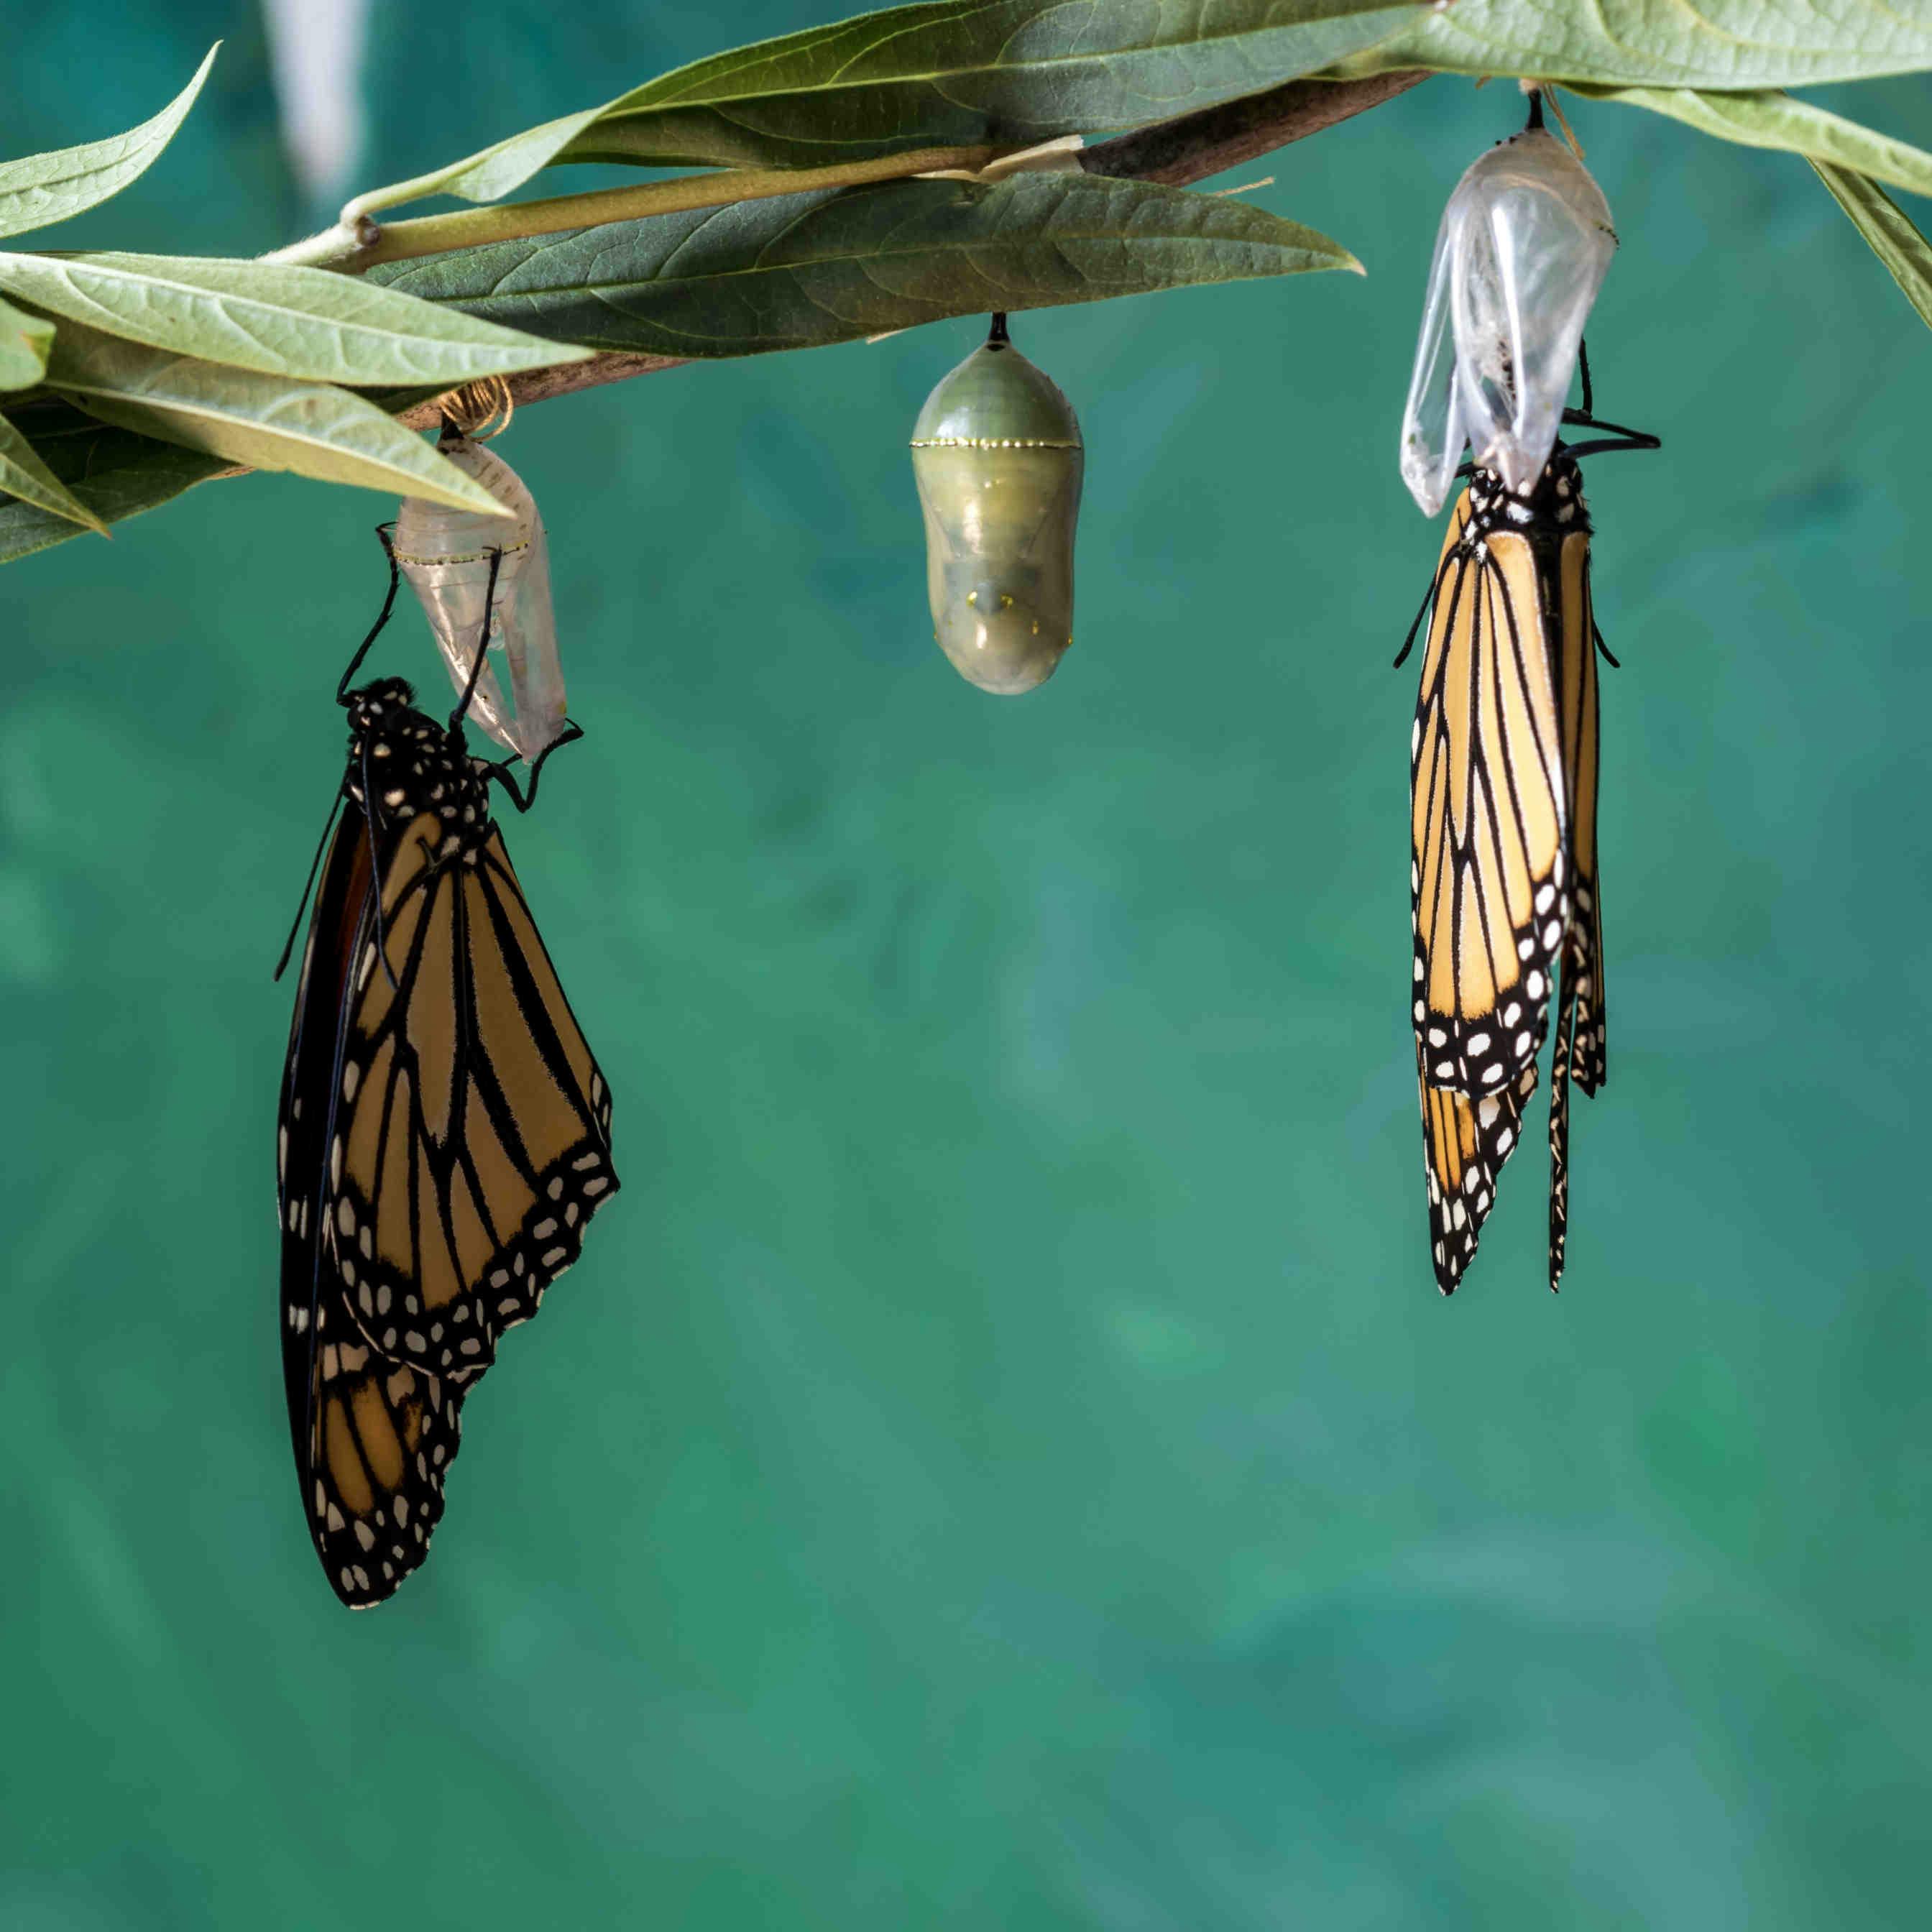 Il ciclo di vita delle farfalle: le fasi